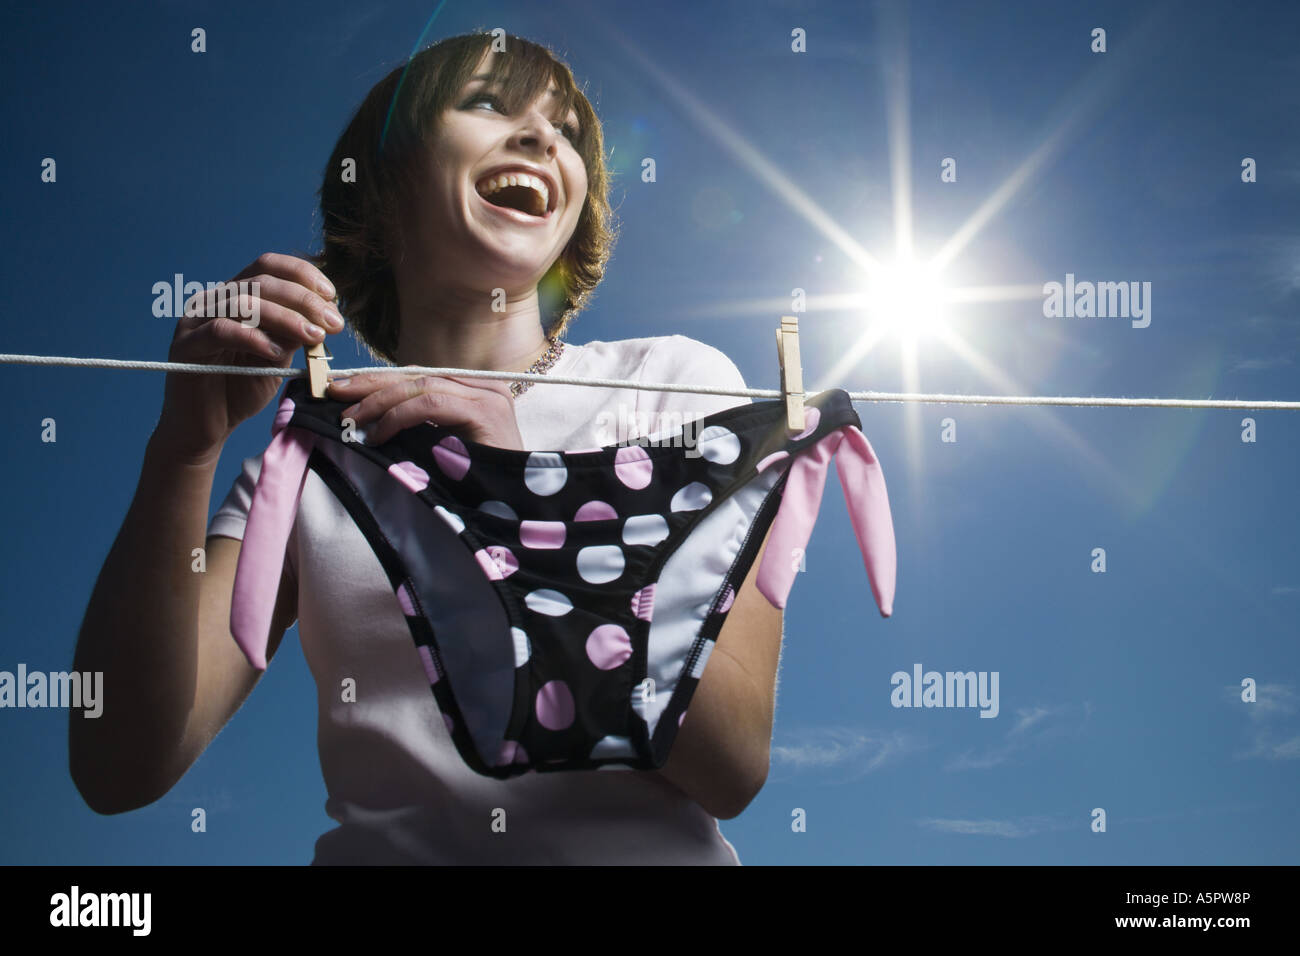 Niedrigen Winkel Ansicht eines Mädchens ein Bikiniunterteil auf einer Wäscheleine trocknen Stockfoto